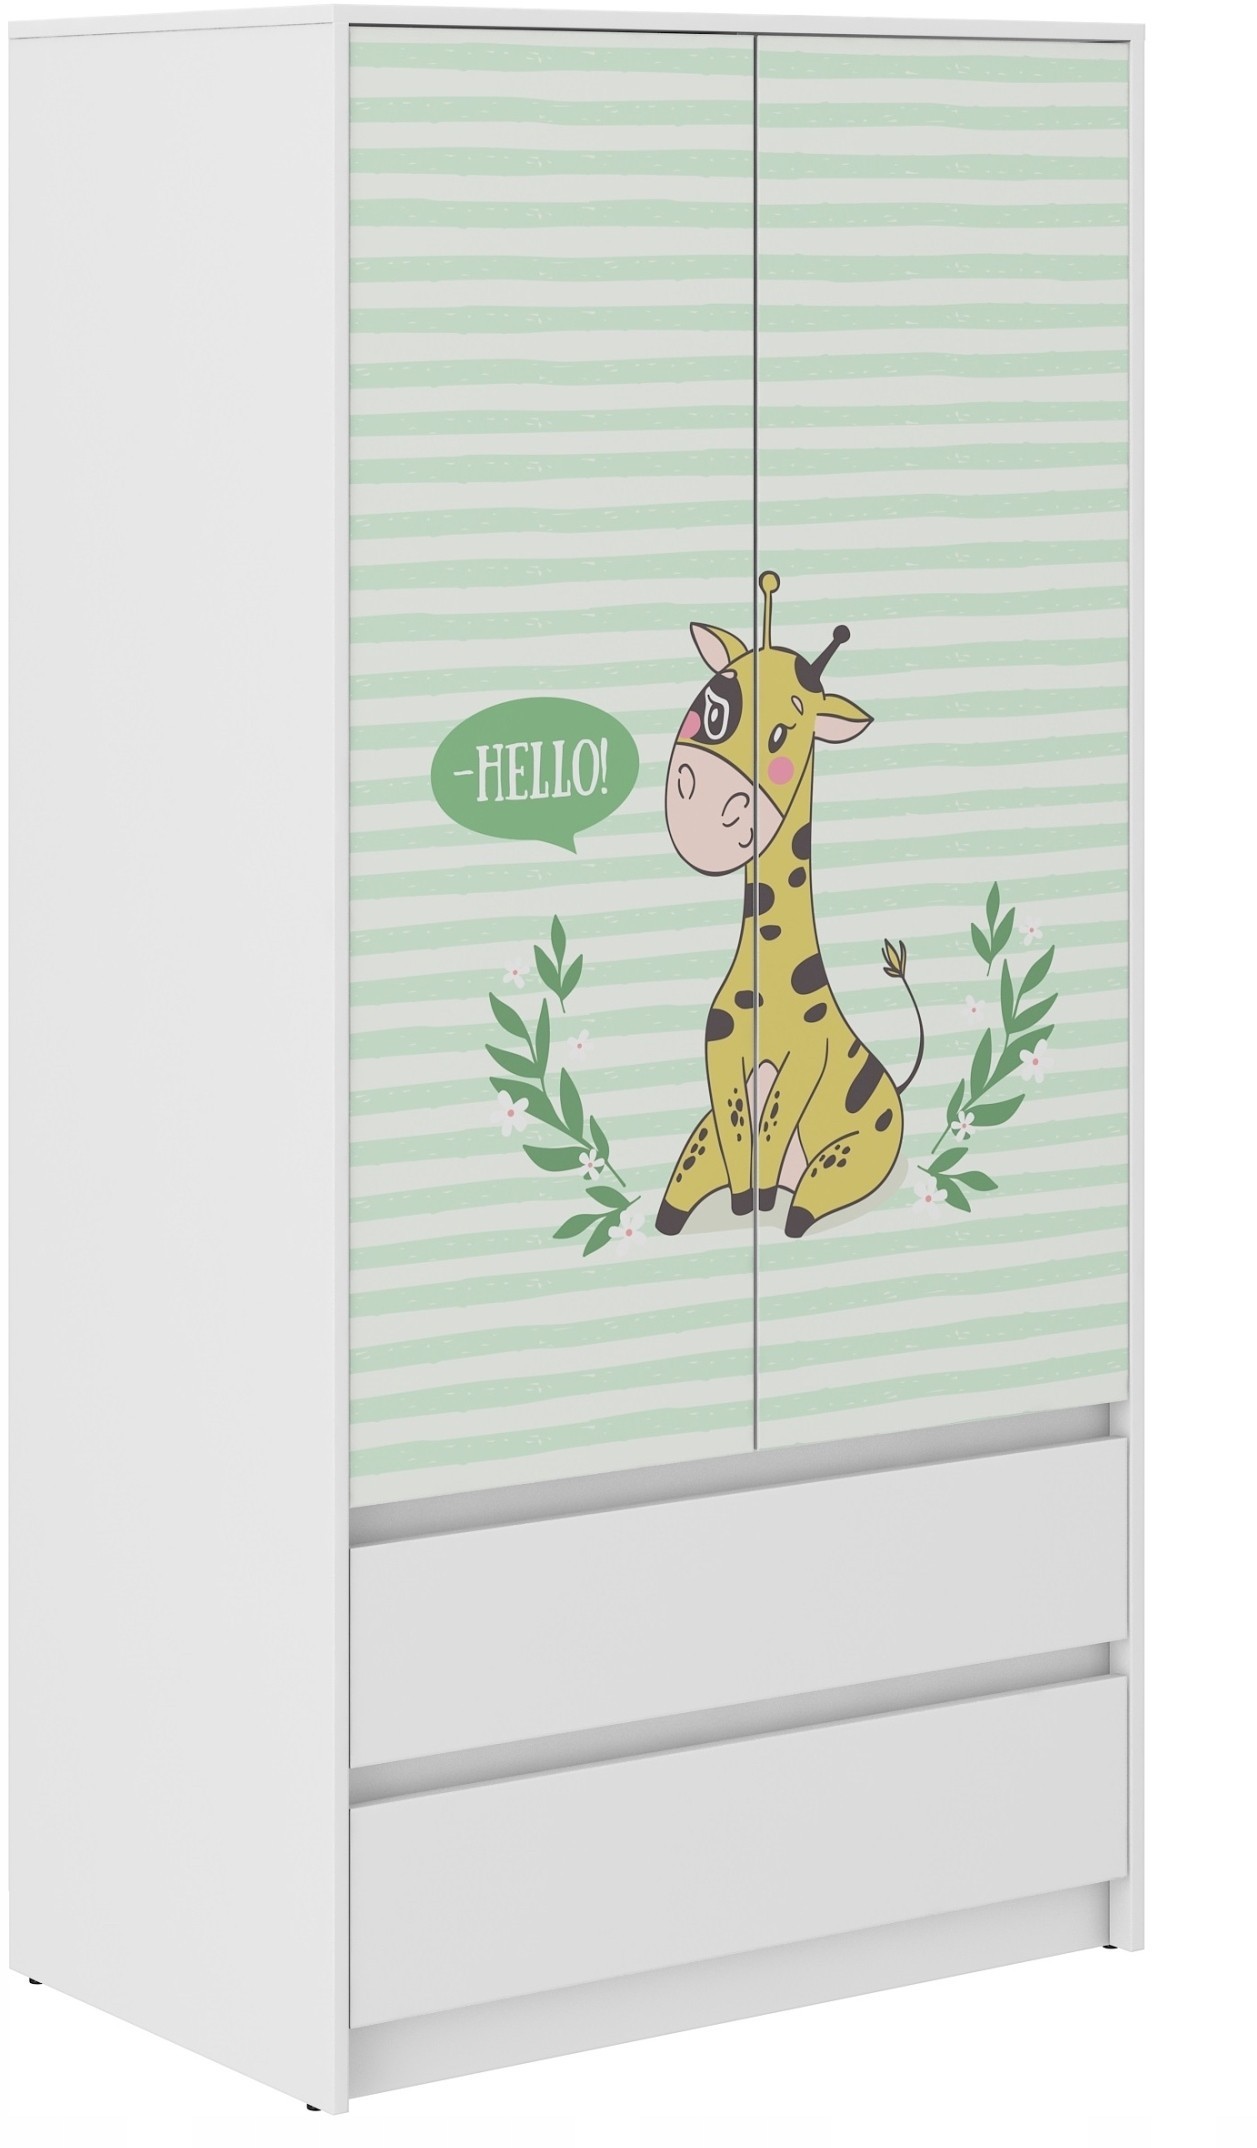 Dětská šatní skříň se žirafou 180x55x90 cm